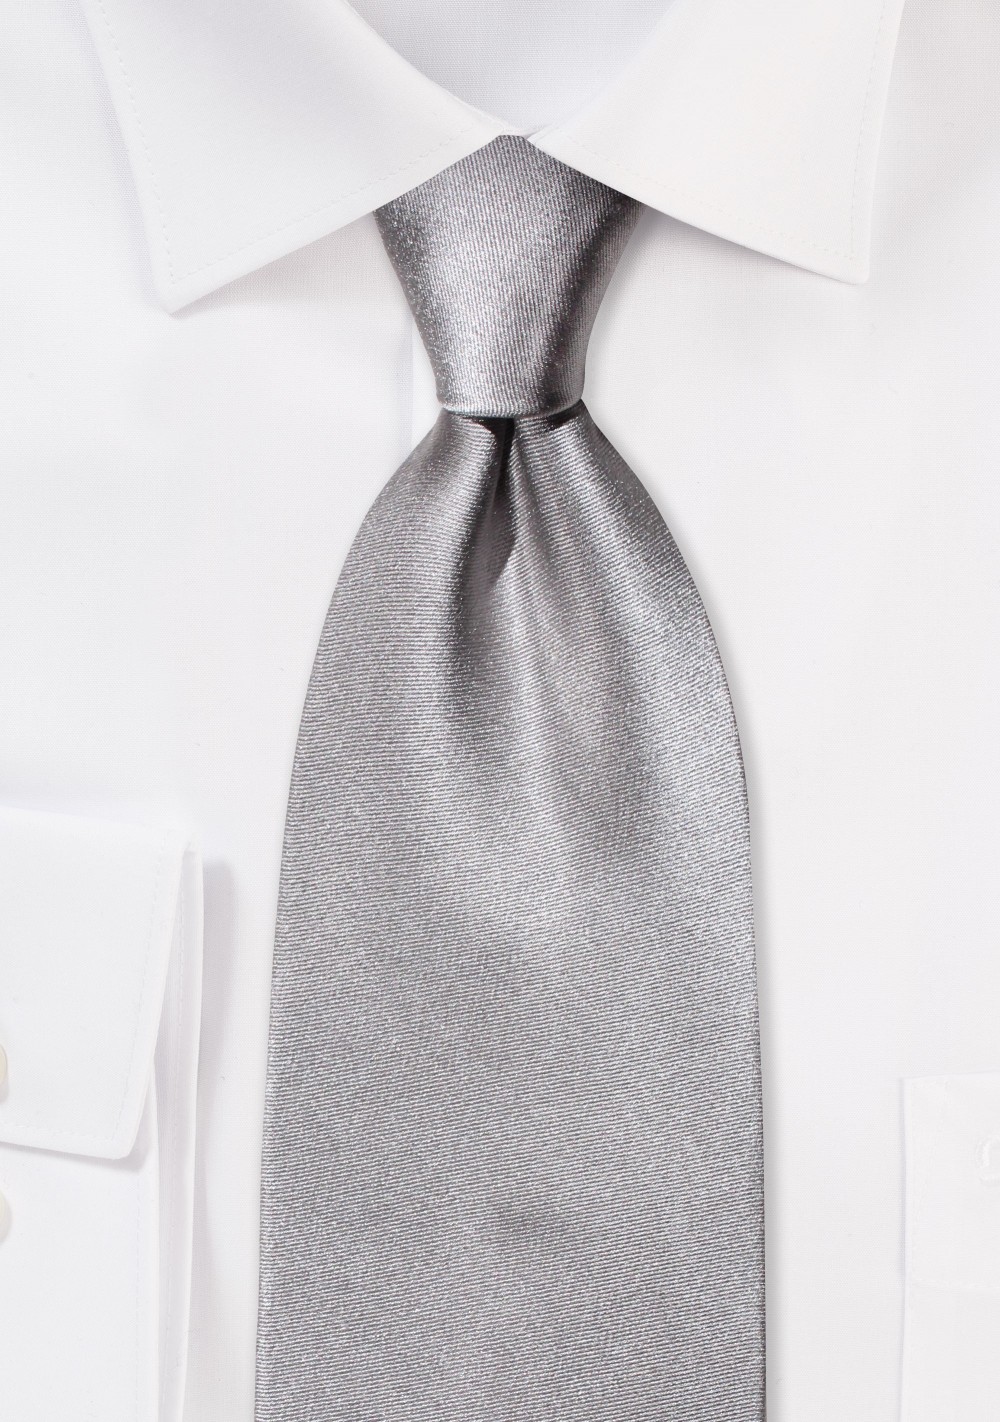 Silver necktie - Solid color silver tie